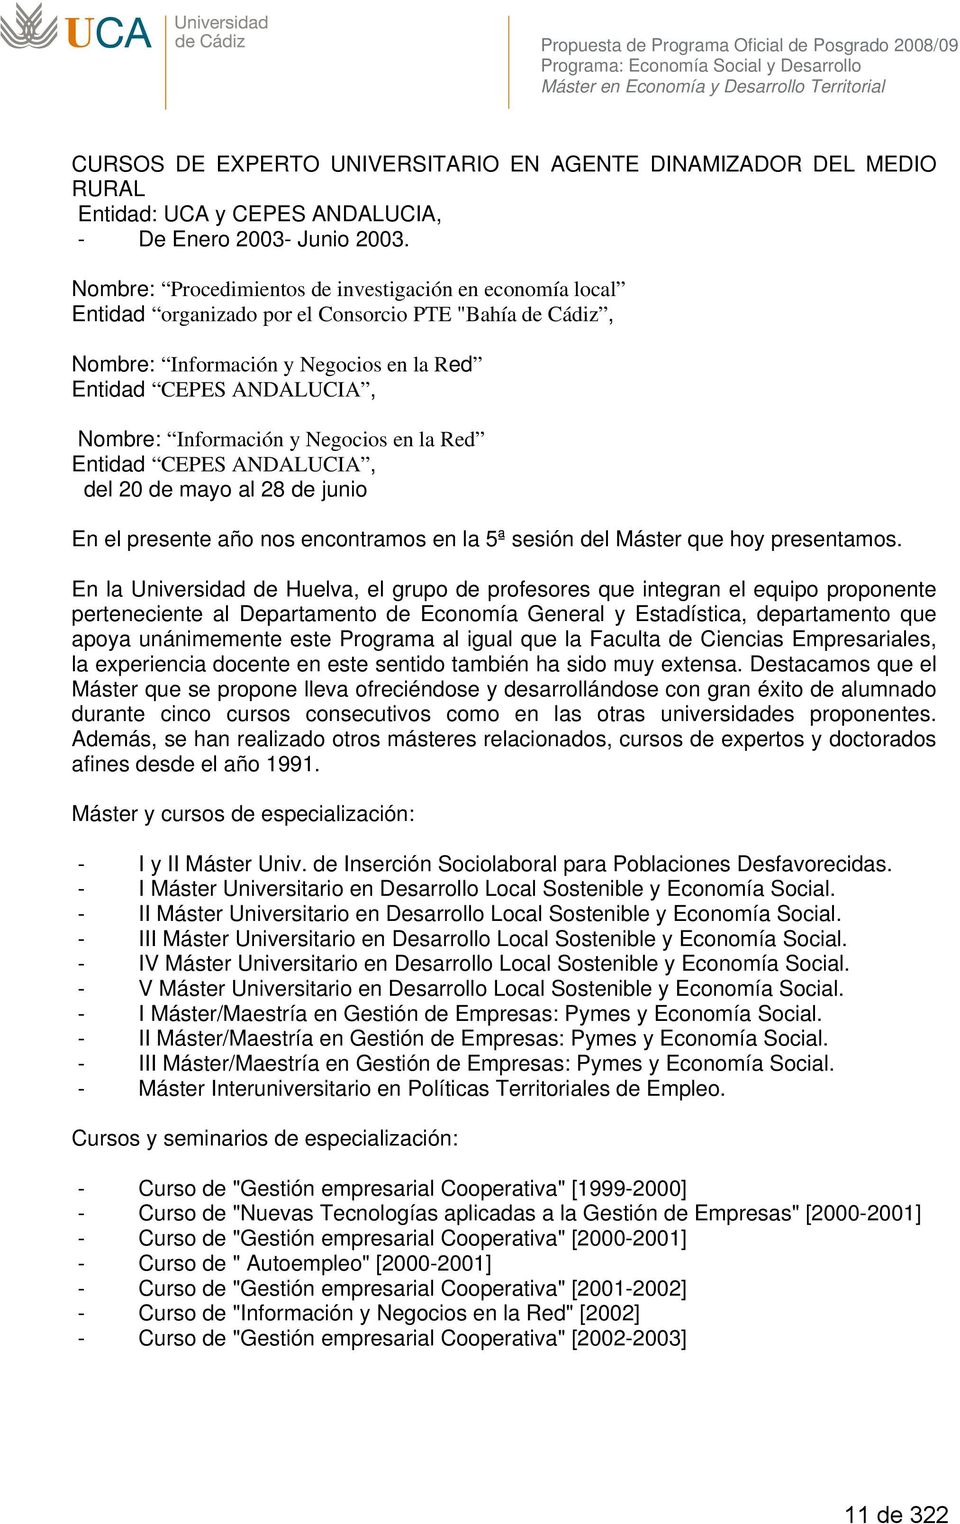 Nombre: Procedimientos de investigación en economía local Entidad organizado por el Consorcio PTE "Bahía de Cádiz, Nombre: Información y Negocios en la Red Entidad CEPES ANDALUCIA, Nombre: